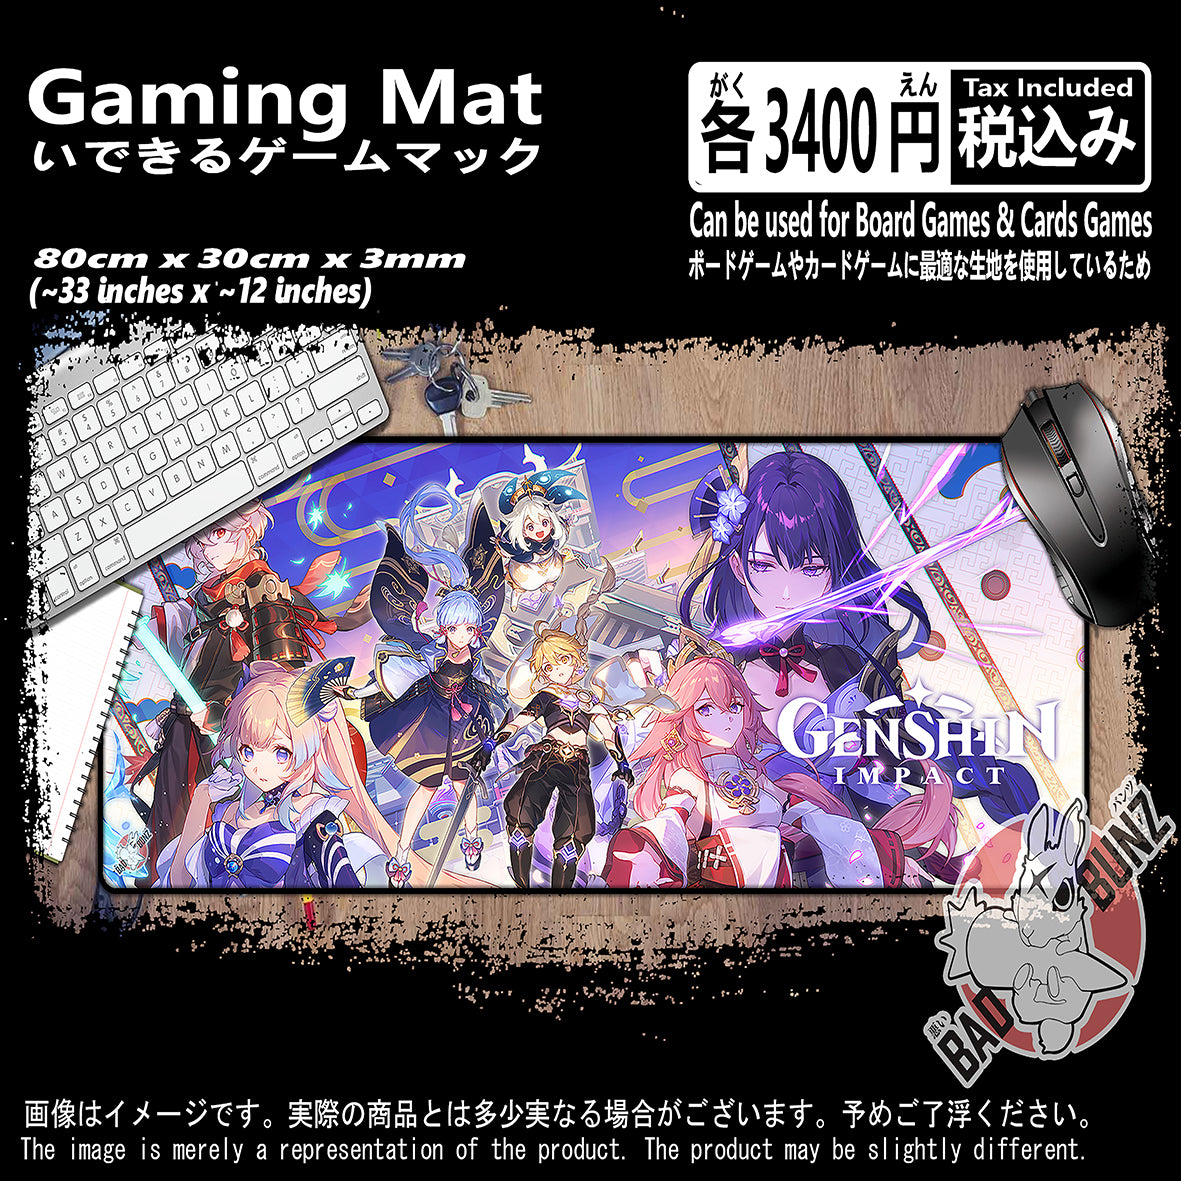 (GM-GSN-02) Genshin Impact Video Games 800mm x 300mm Gaming Play Mat